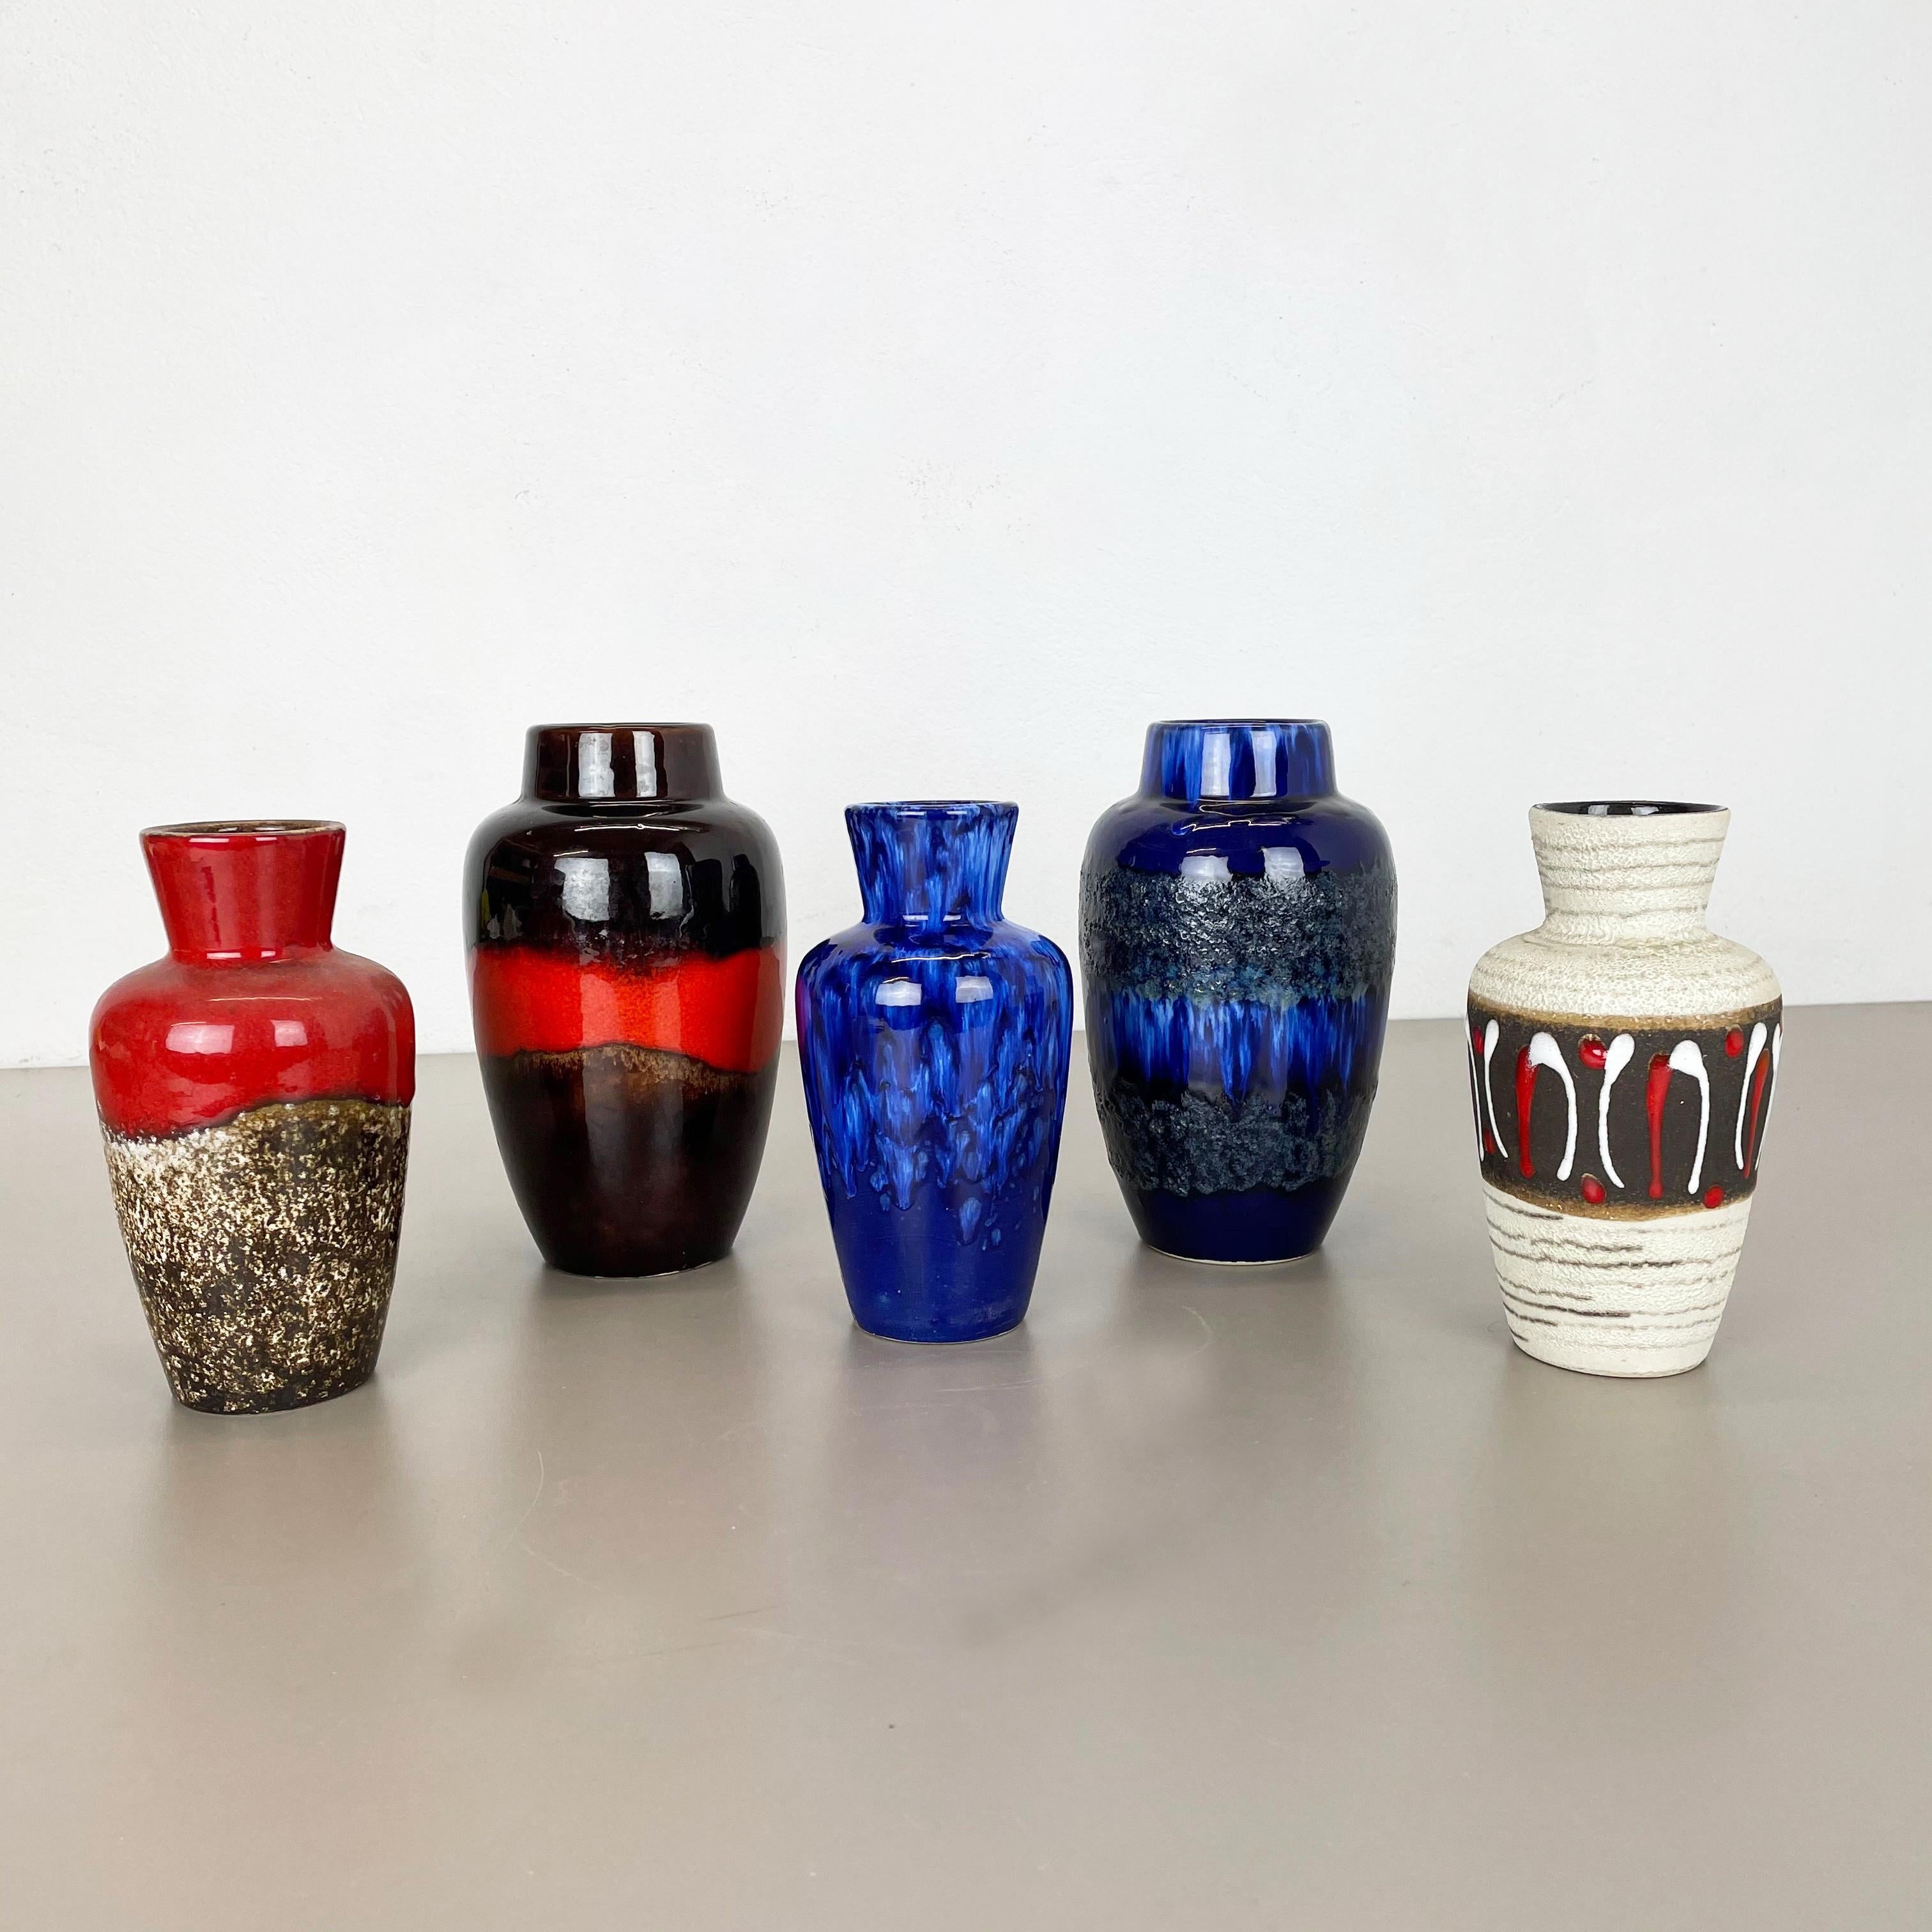 Artikel:

Satz von fünf fetten Lavakunstvasen


Produzent:

Scheurich, Deutschland


Design/One:

Nr. 523-18
Nr. 549-21



Jahrzehnt:

1970s


Dieses originelle Vintage-Vasen-Set wurde in den 1970er Jahren in Deutschland